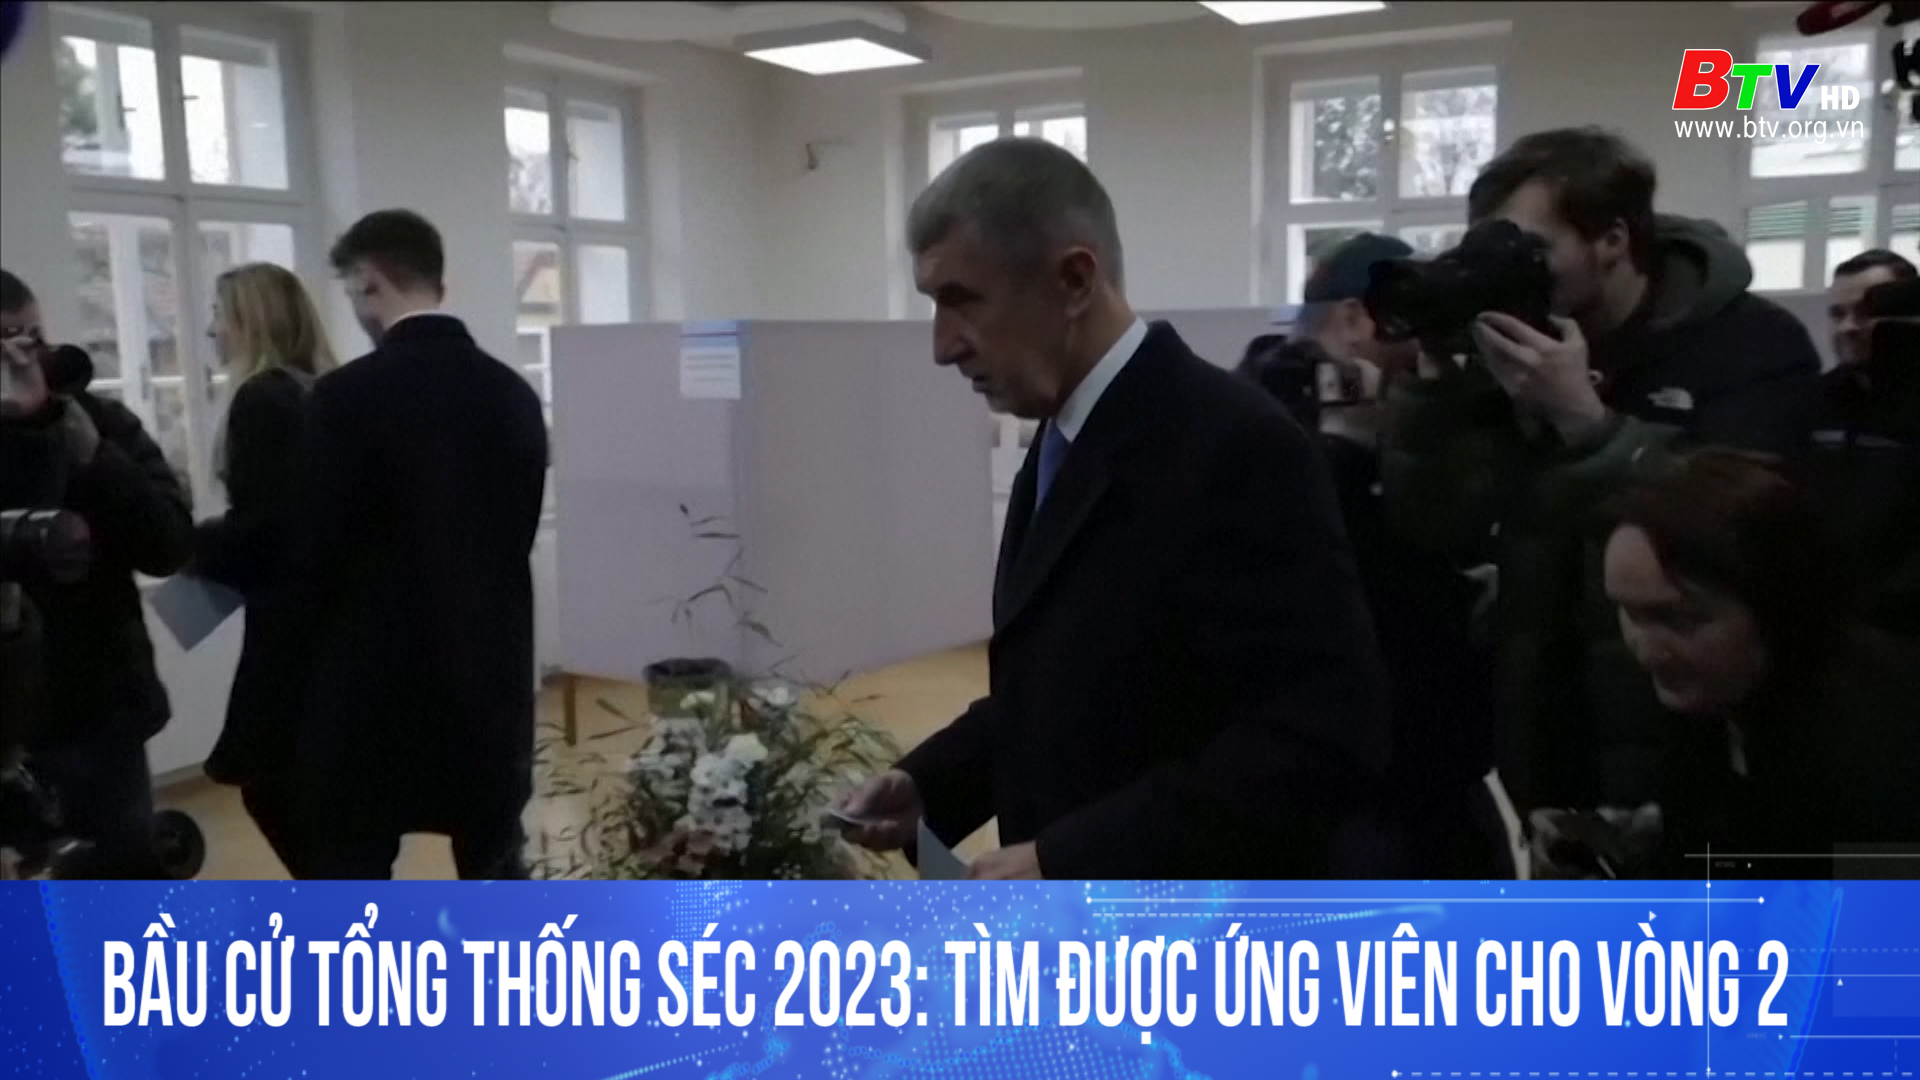 Bầu cử Tổng thống Séc 2023: tìm được ứng viên cho vòng 2